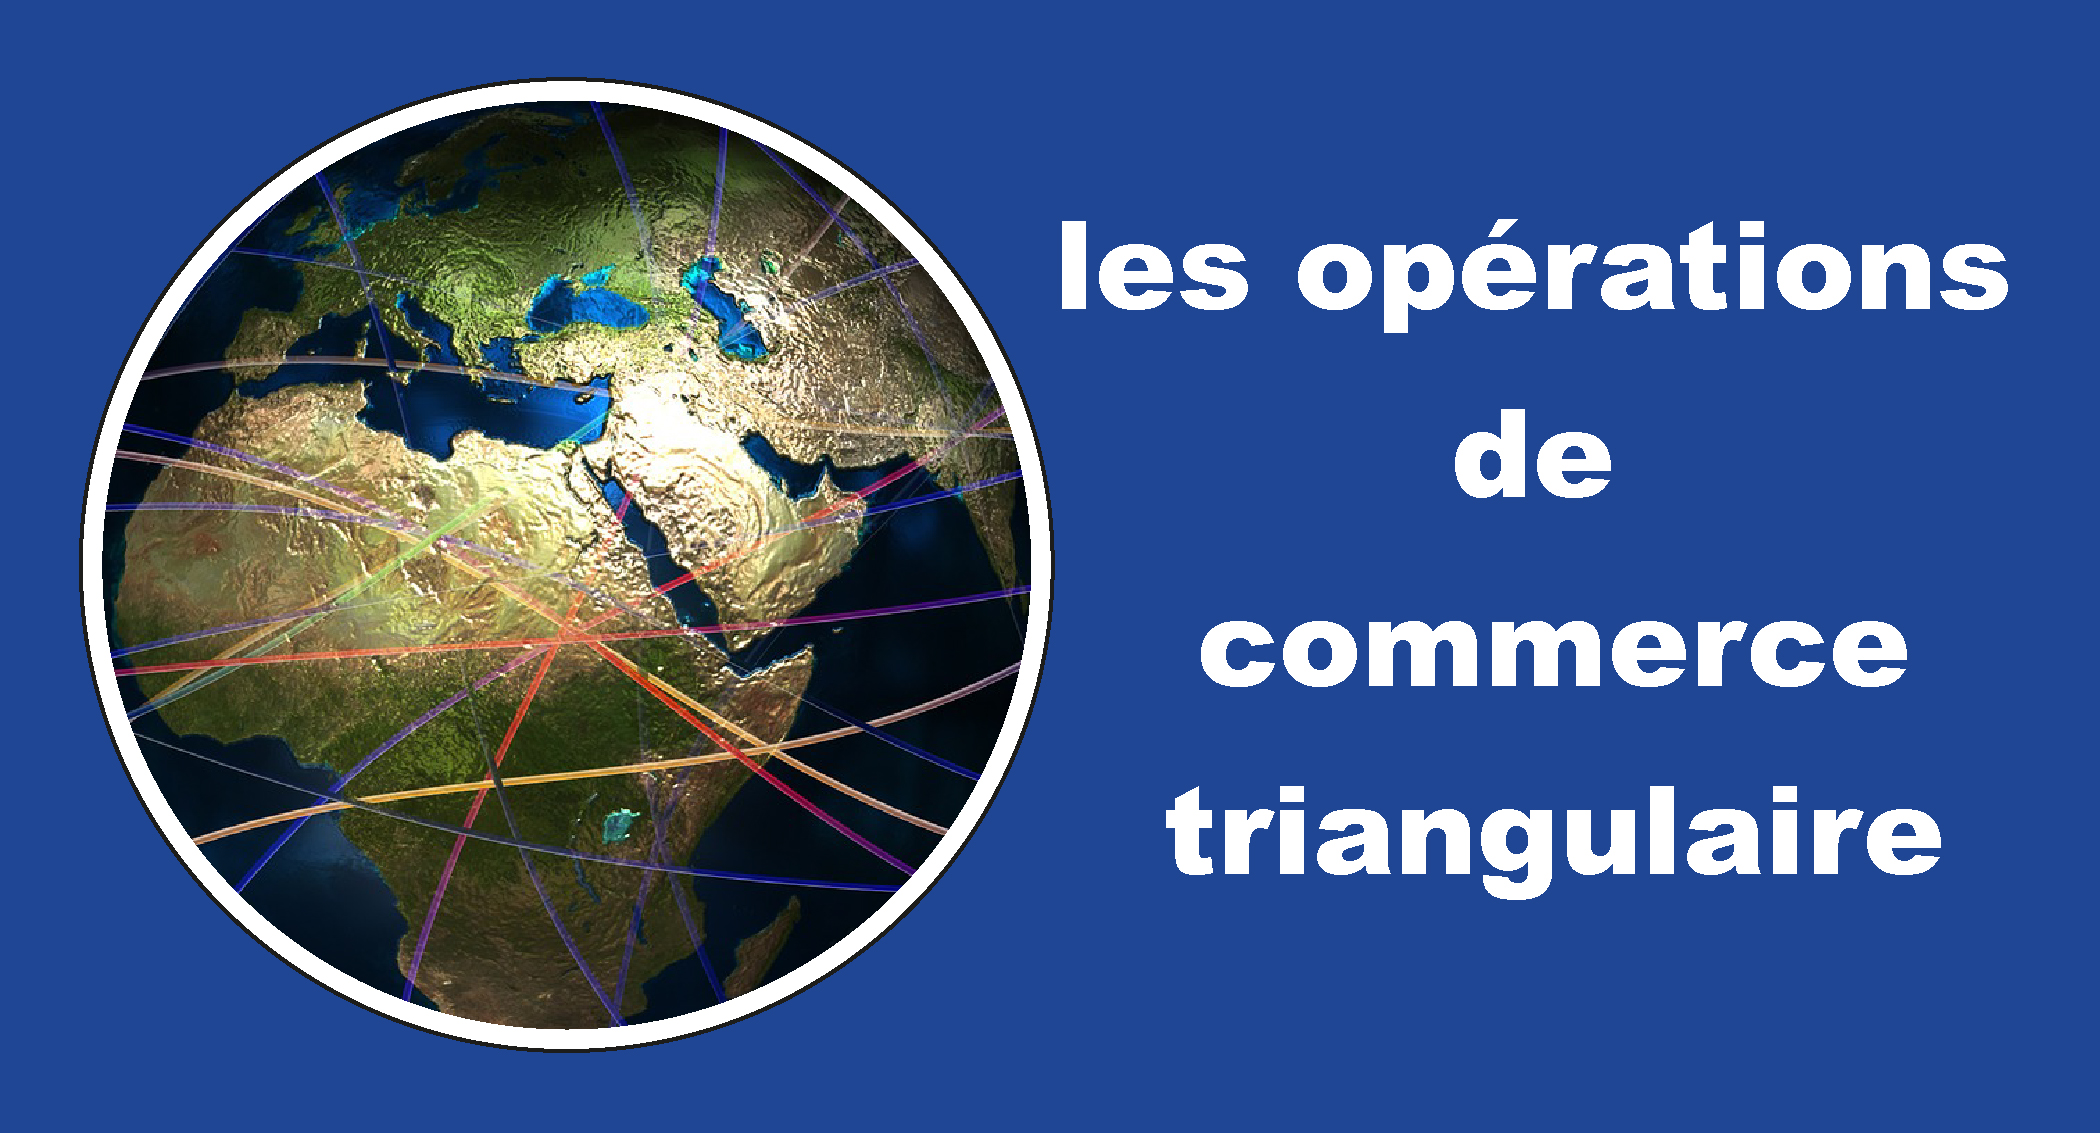 Les opérations de commerce triangulaire